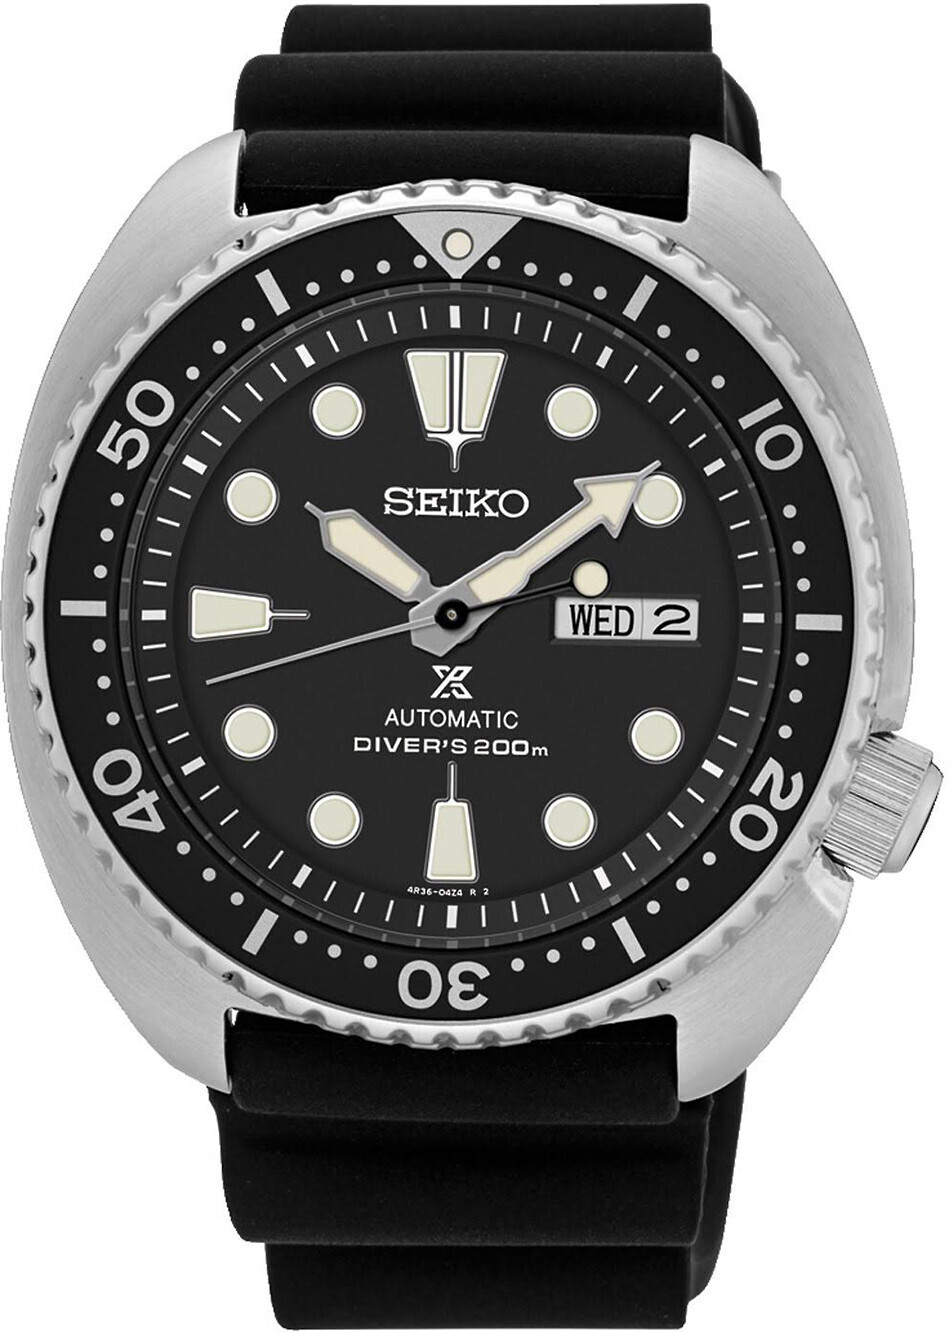 Seiko SRPE93K1 Prospex Automatic Diver's 